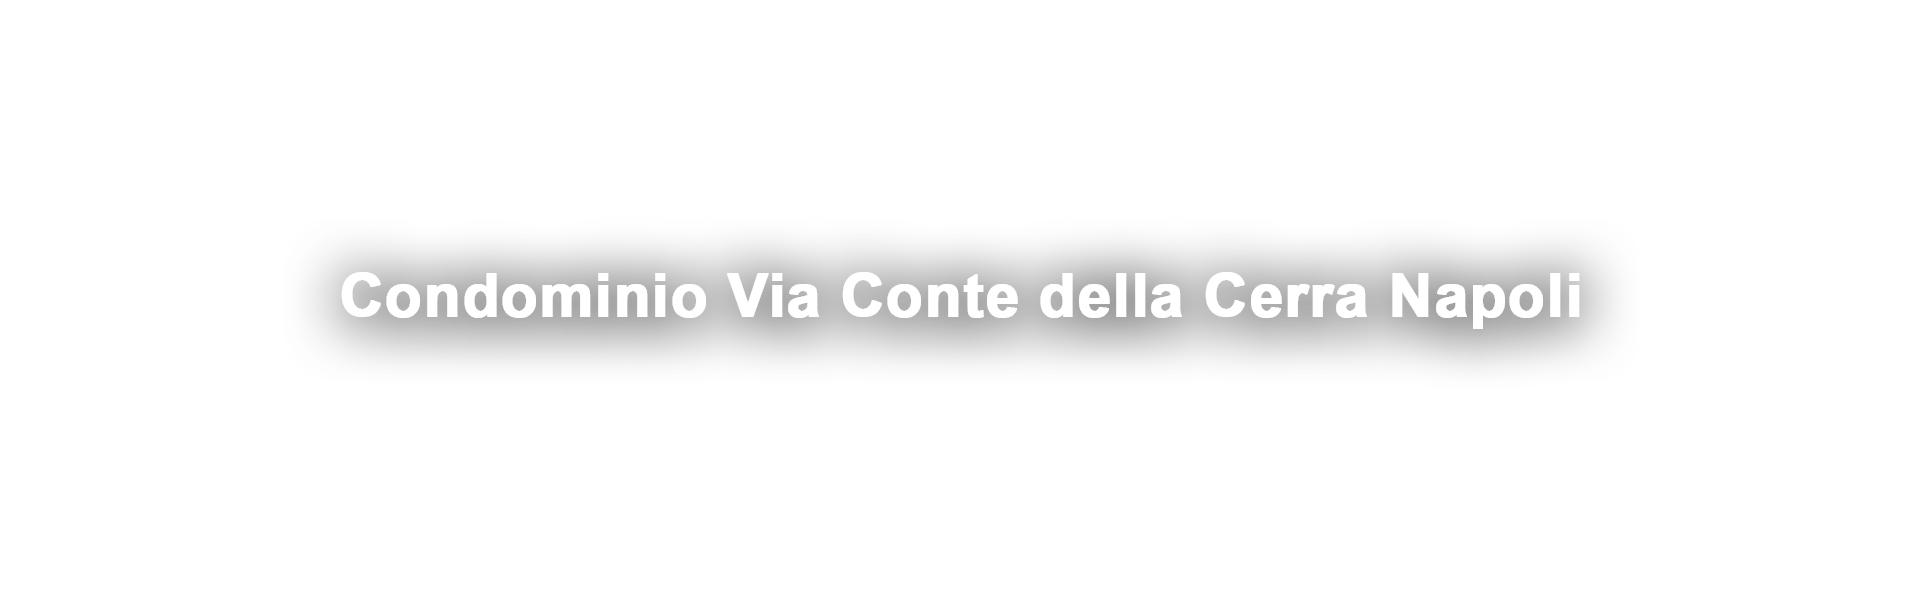 Condominio Via Conte della Cerra Napoli